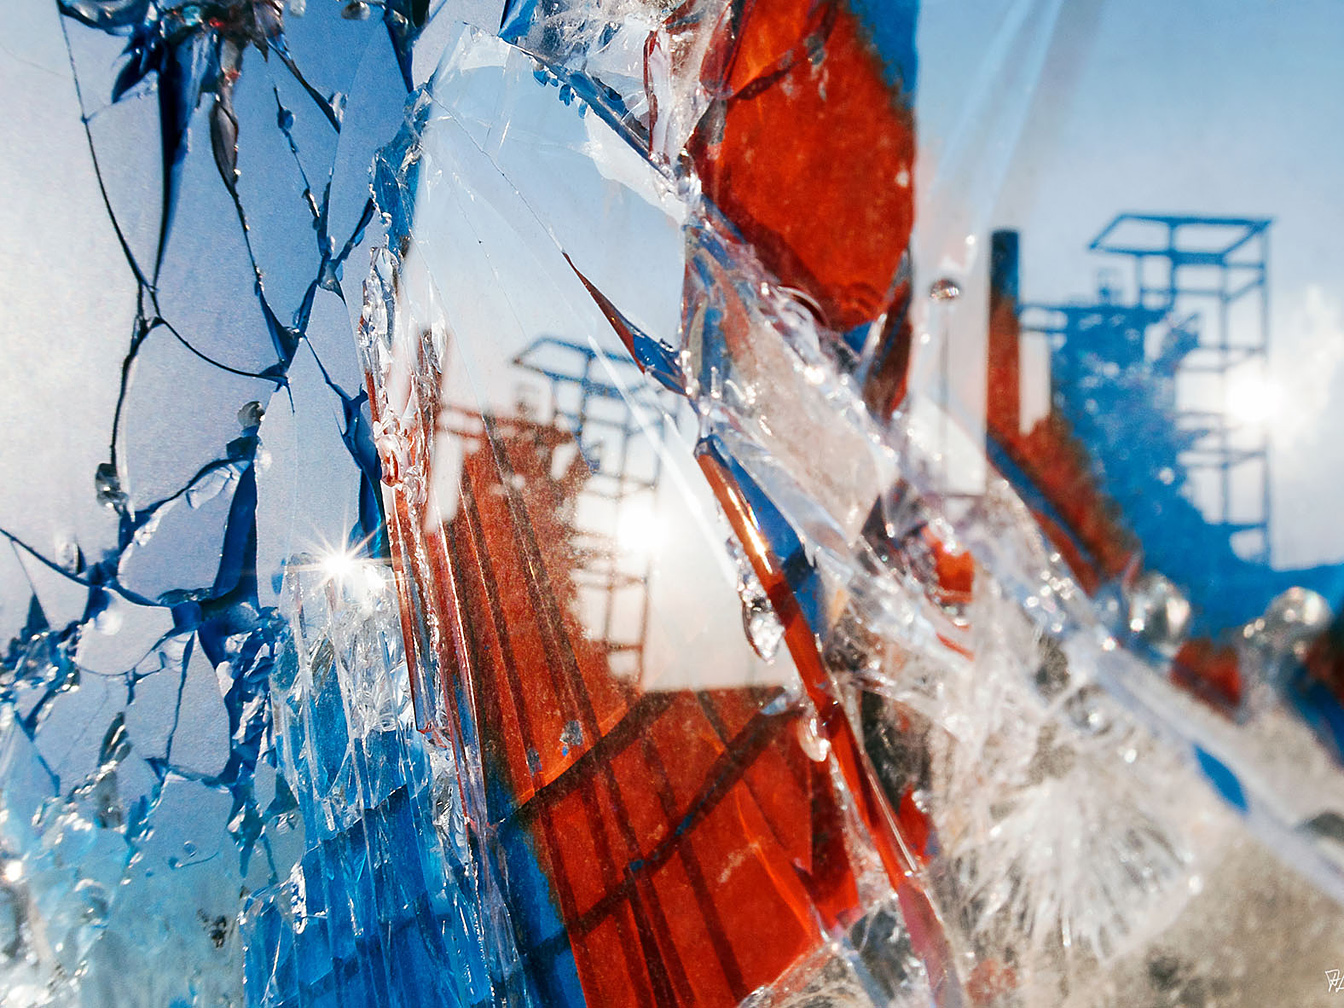 "Pieces-of-yesterday" - ein Foto von Annette Liese, das im Vordergrund zersplittertes Glas in verschiedenen Farben zeigt, dahinter Industriegebäude 